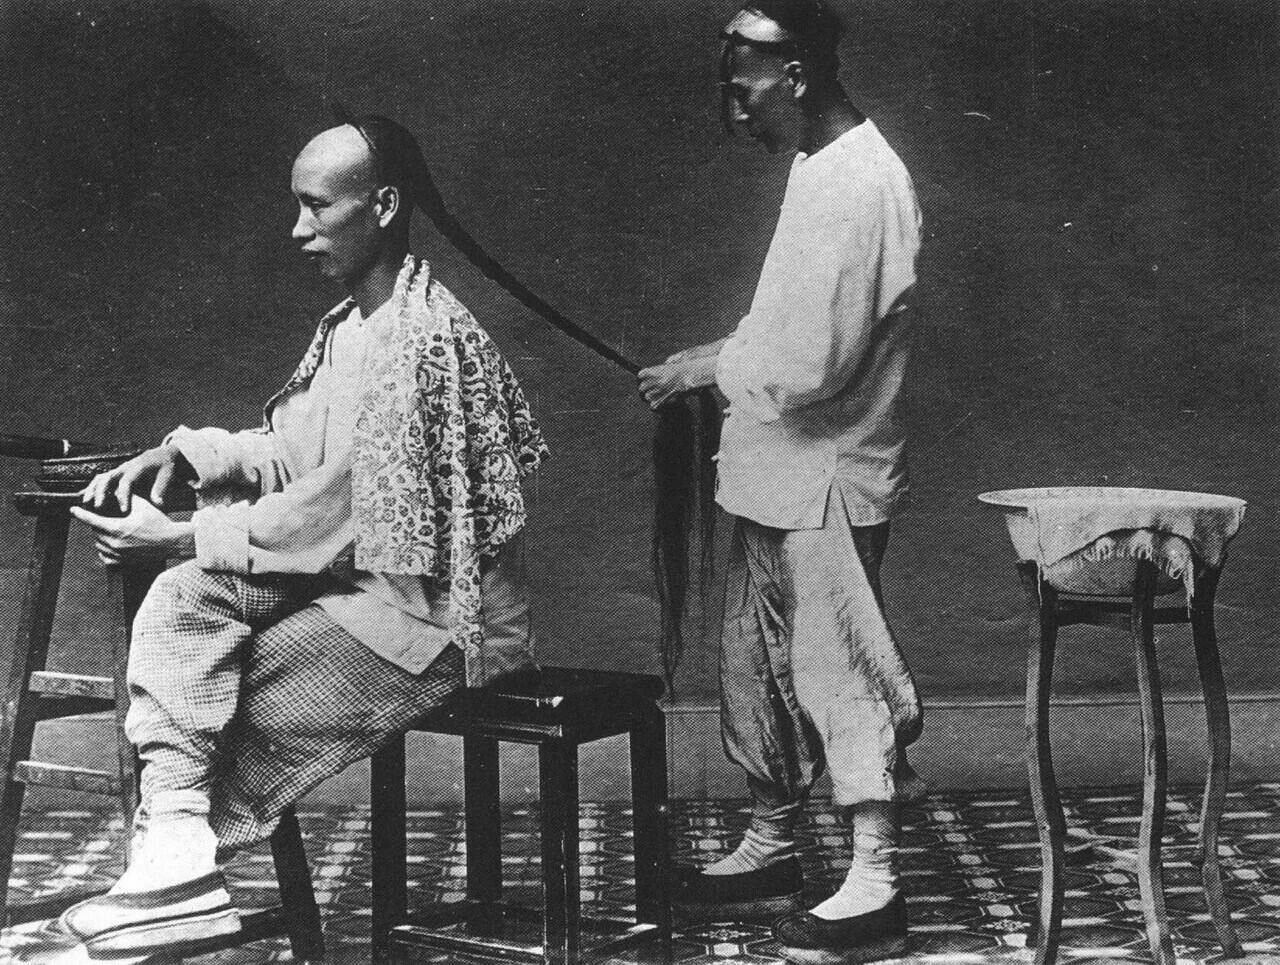 Botak Didepan Kuncir Dibelakang, Inilah Asal Gaya Rambut Unik China Zaman Dulu